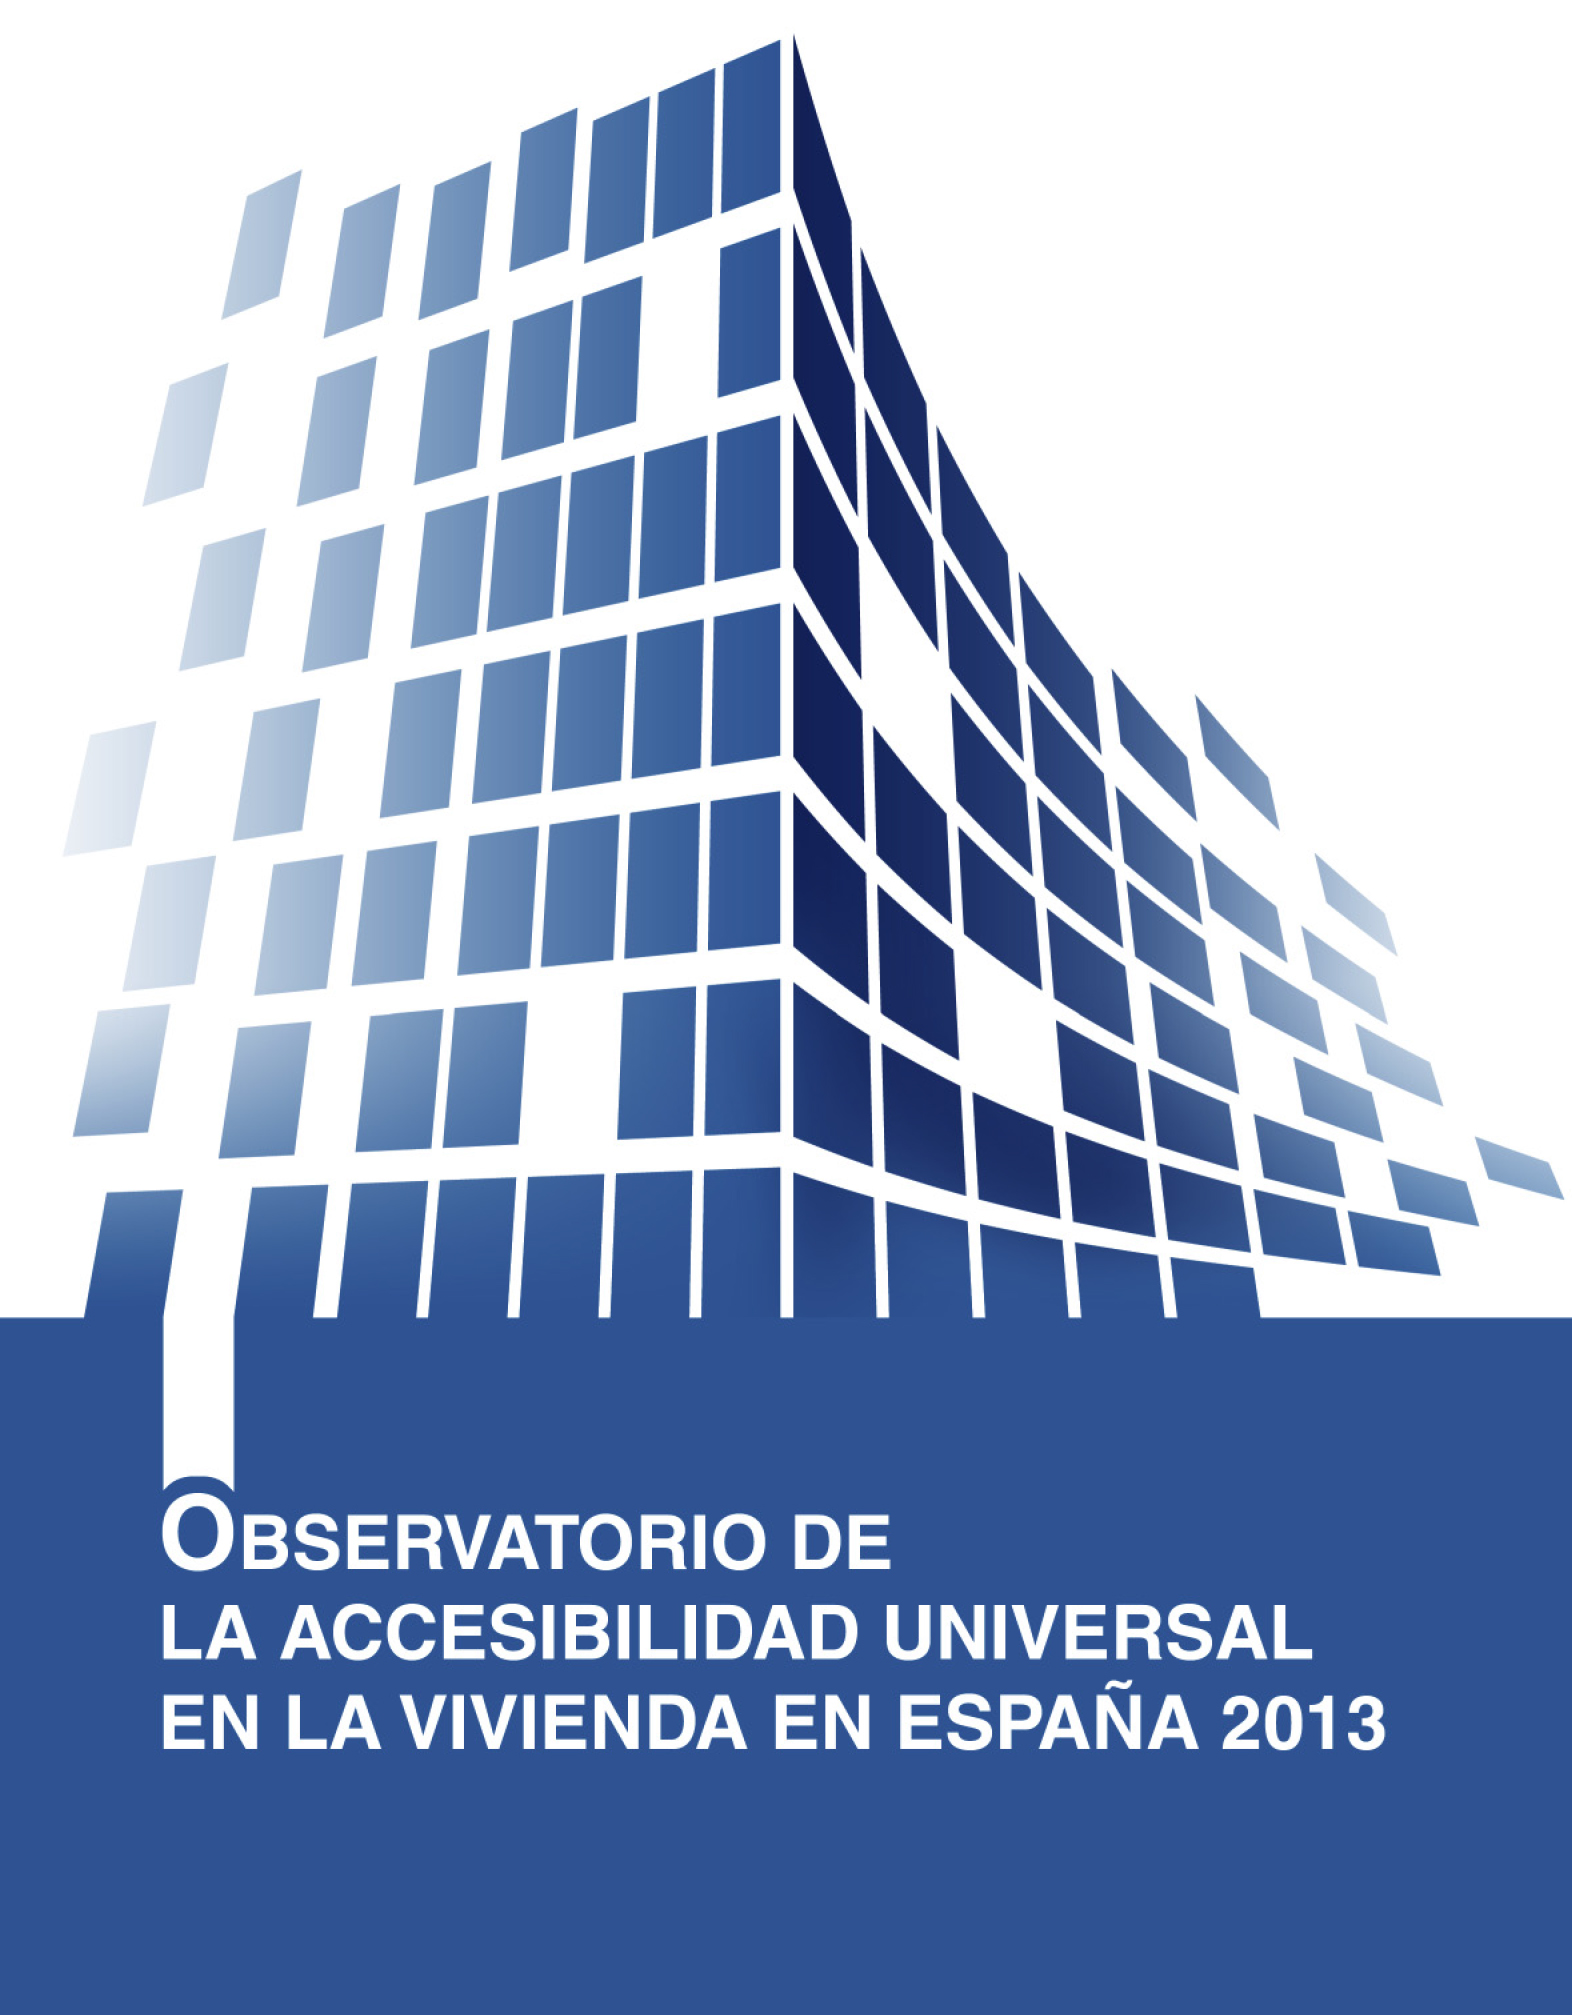 Observatorio de la Accesibilidad Universal en la Vivienda 2013